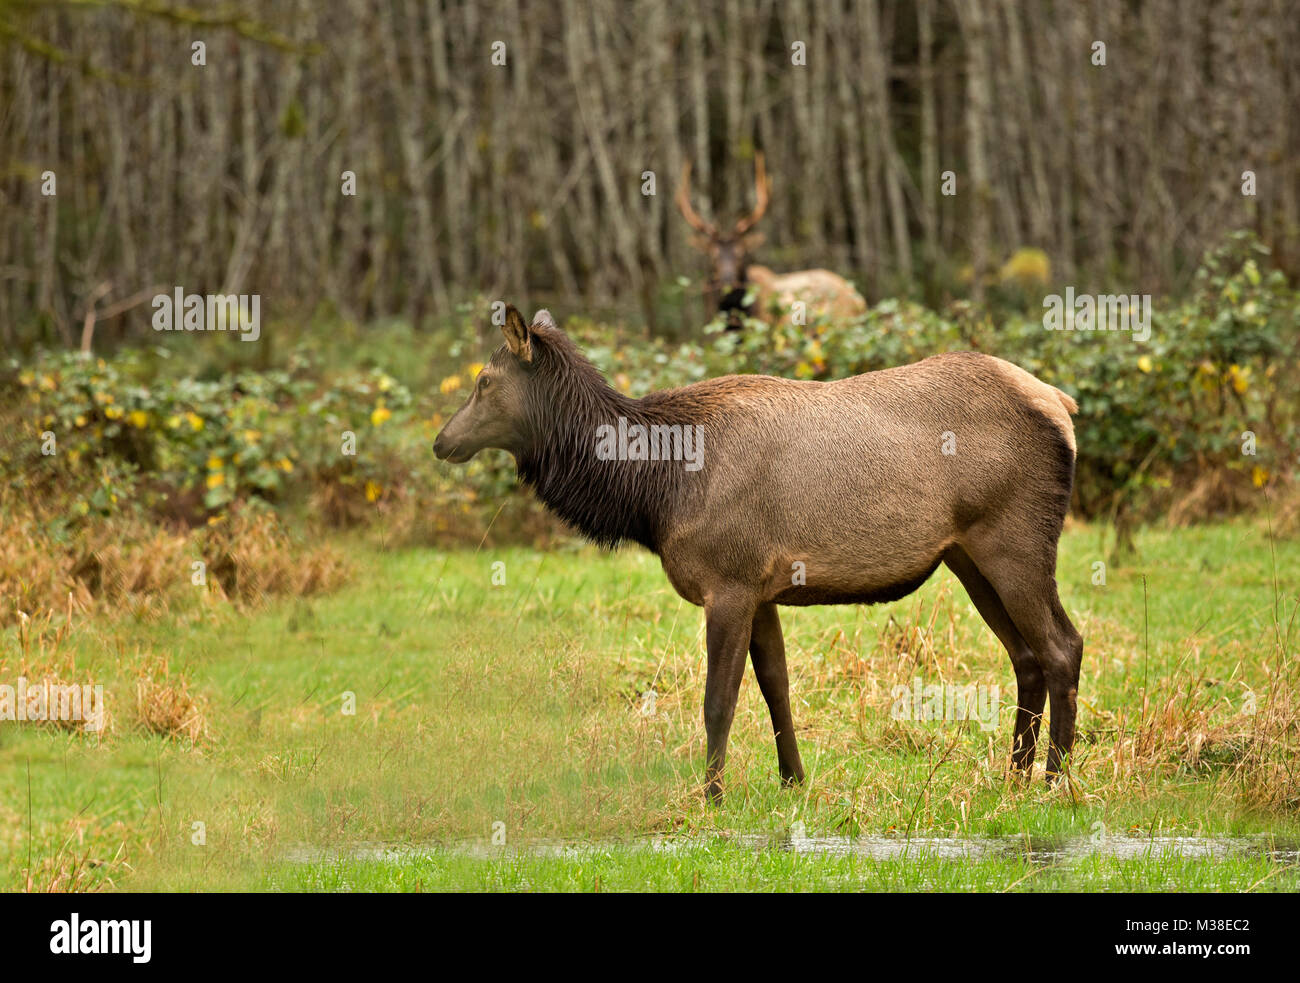 WA13322-00...WASHINGTON - Elk paissant dans une prairie dans la région de la vallée de la rivière Quinault d'Olympic National Park. Banque D'Images